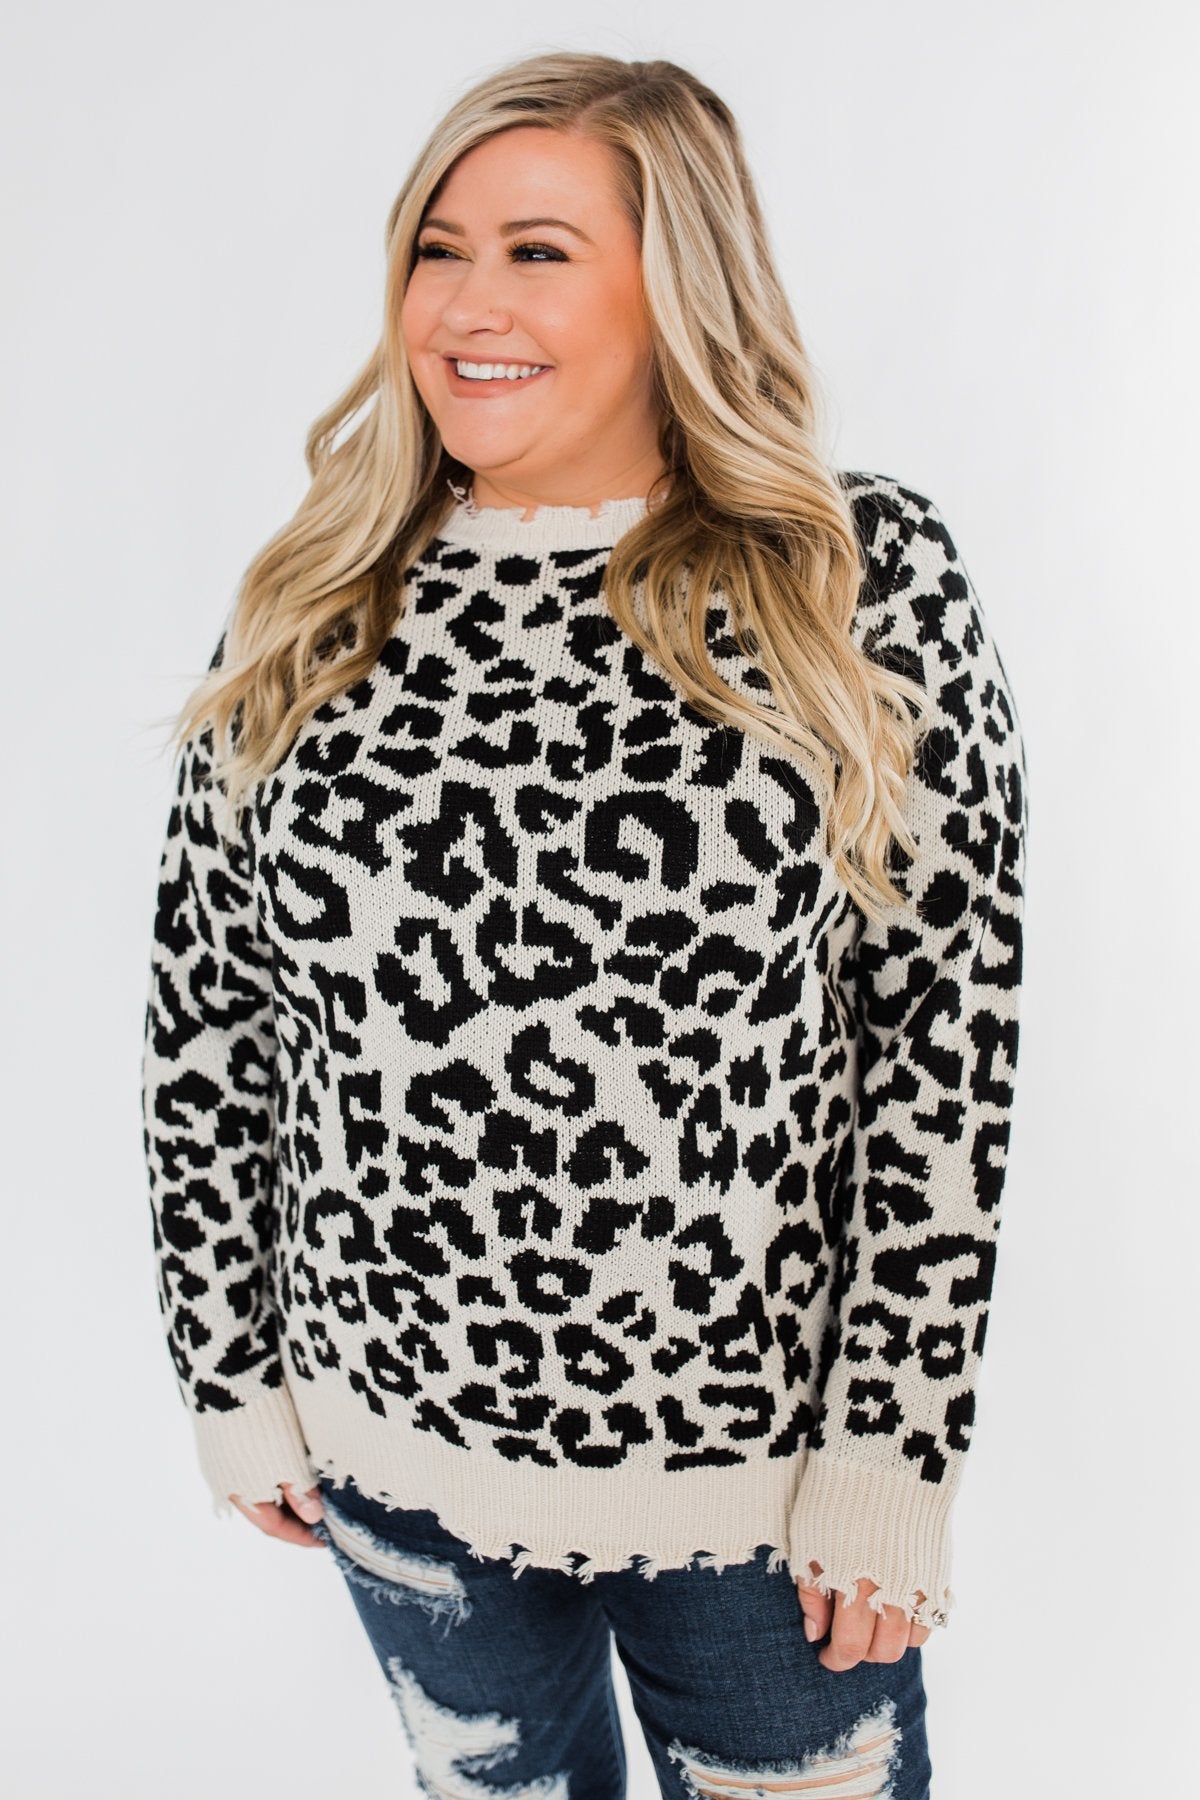 Stay Fierce Leopard Knit Sweater- Cream